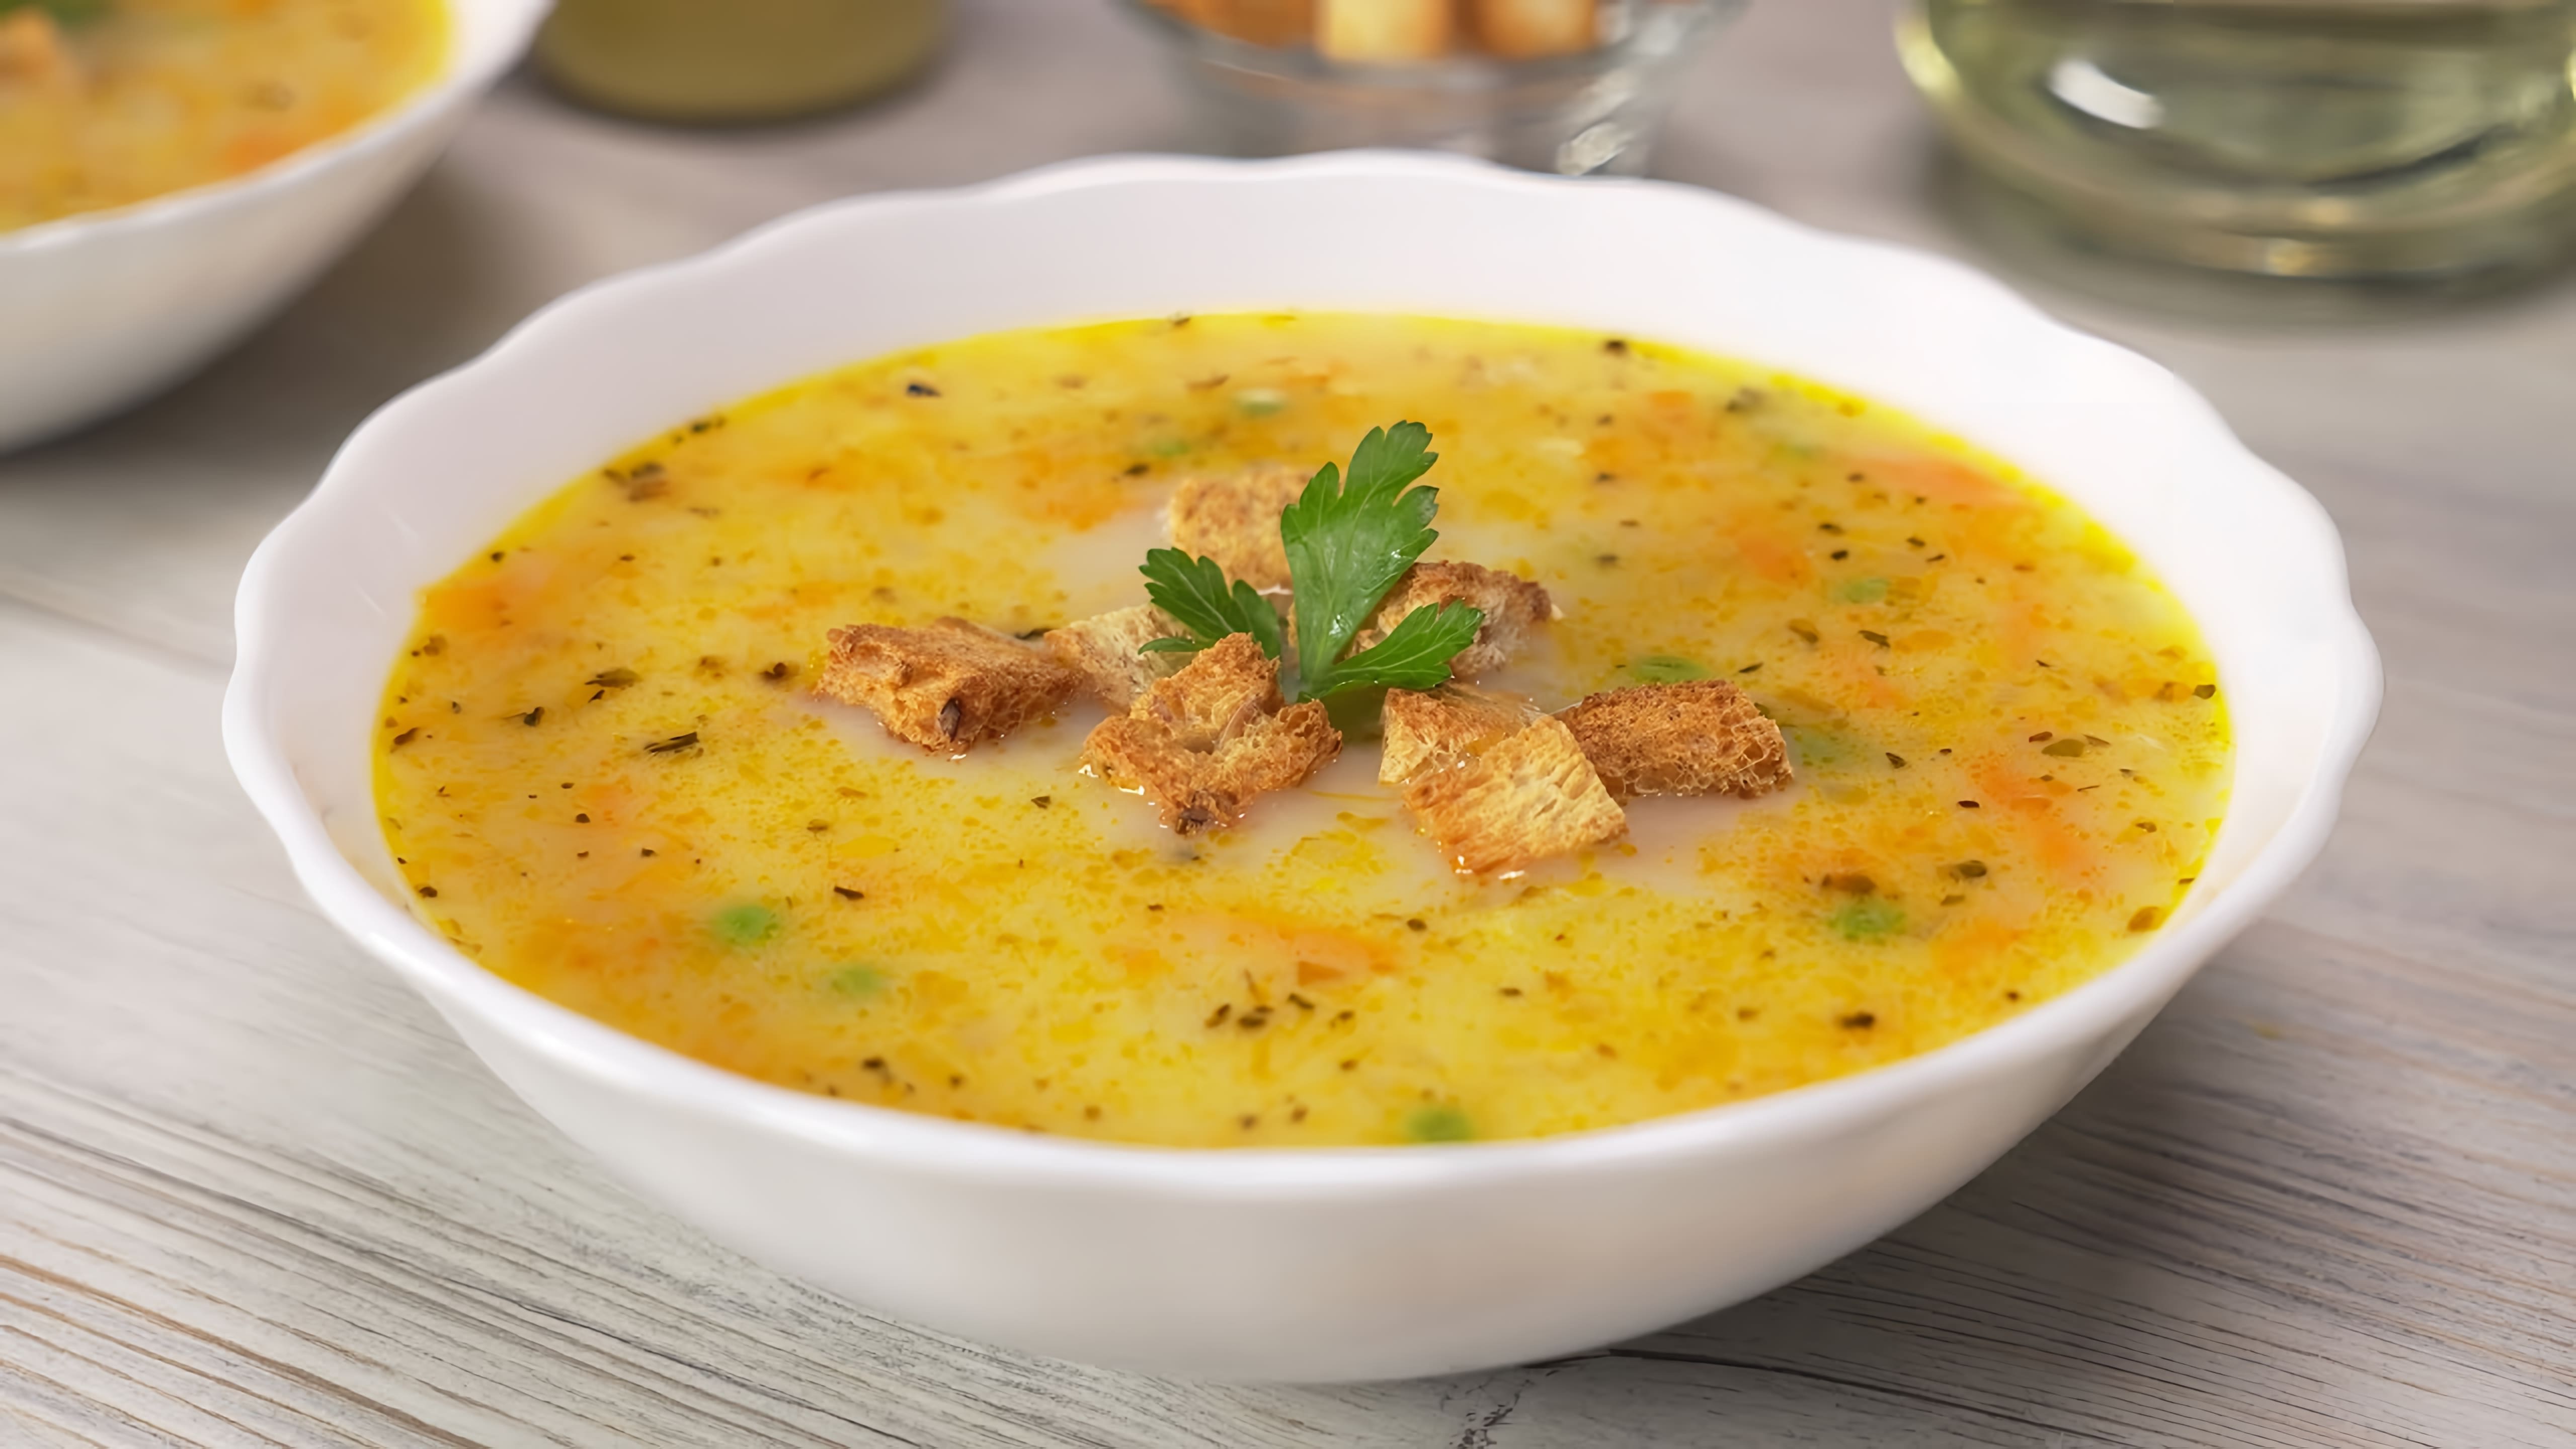 В этом видео демонстрируется рецепт приготовления вкусного супа с плавленым сыром из простых продуктов за 30 минут